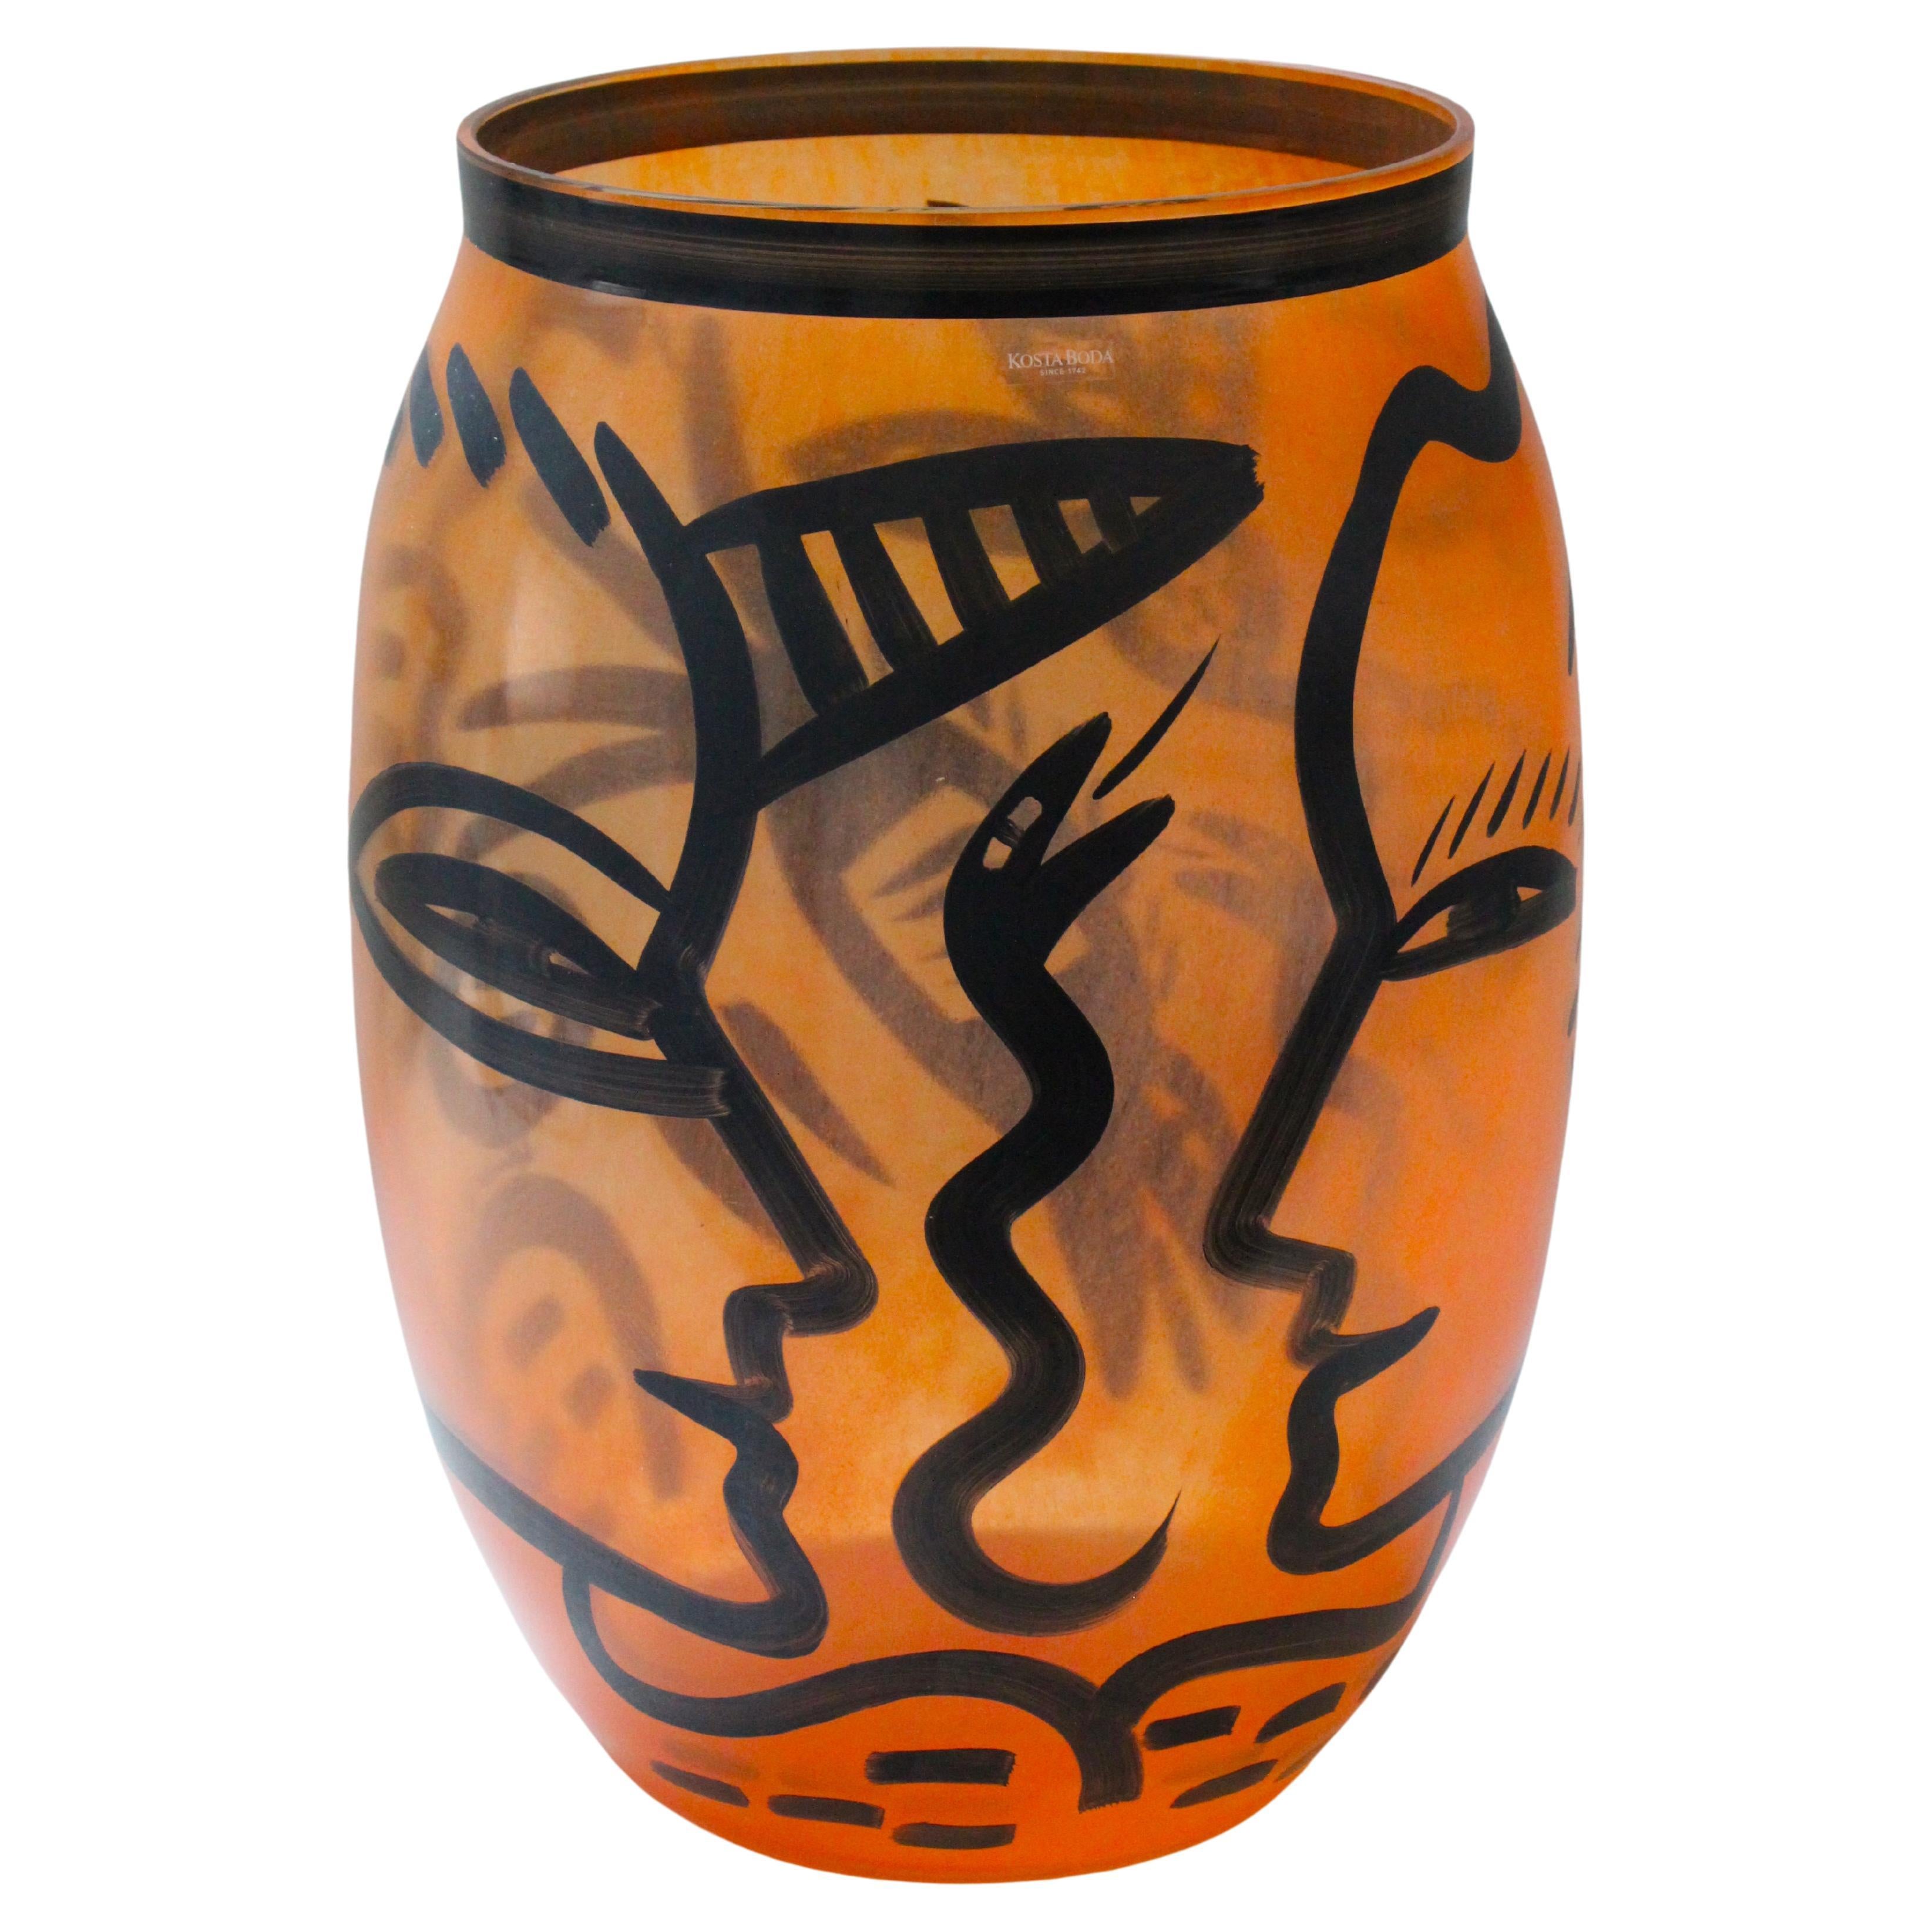 Black and Orange Vase by Kosta Boda